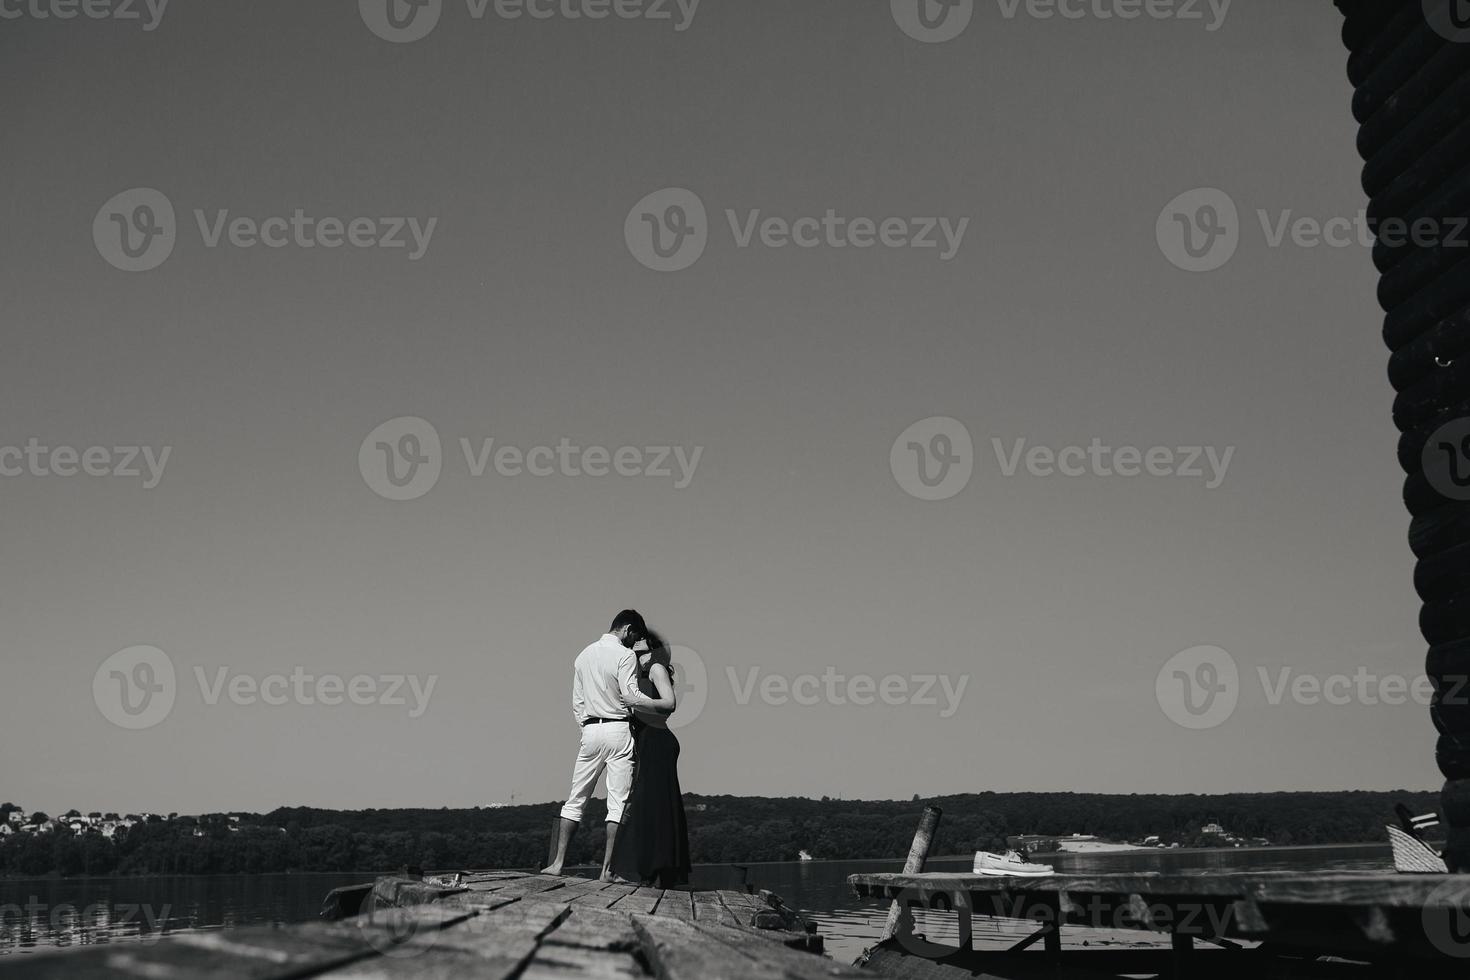 Mann und Frau umarmt verliebt auf Holzsteg foto